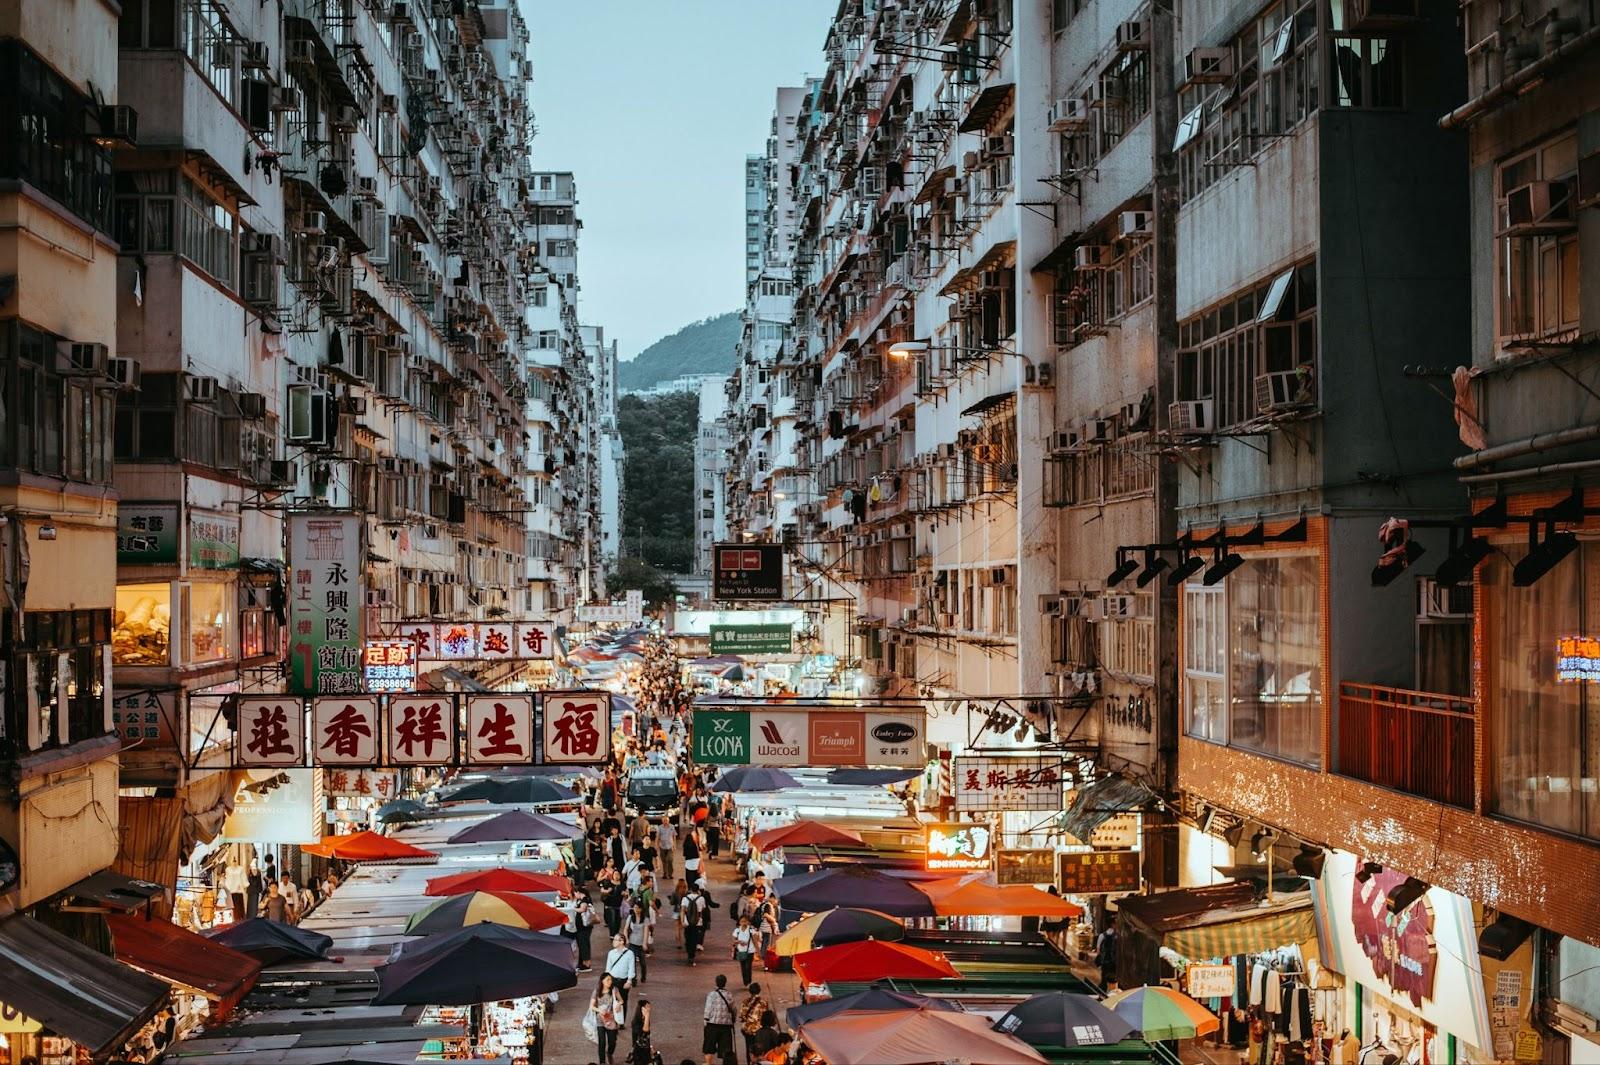 Evening market in Hong Kong.